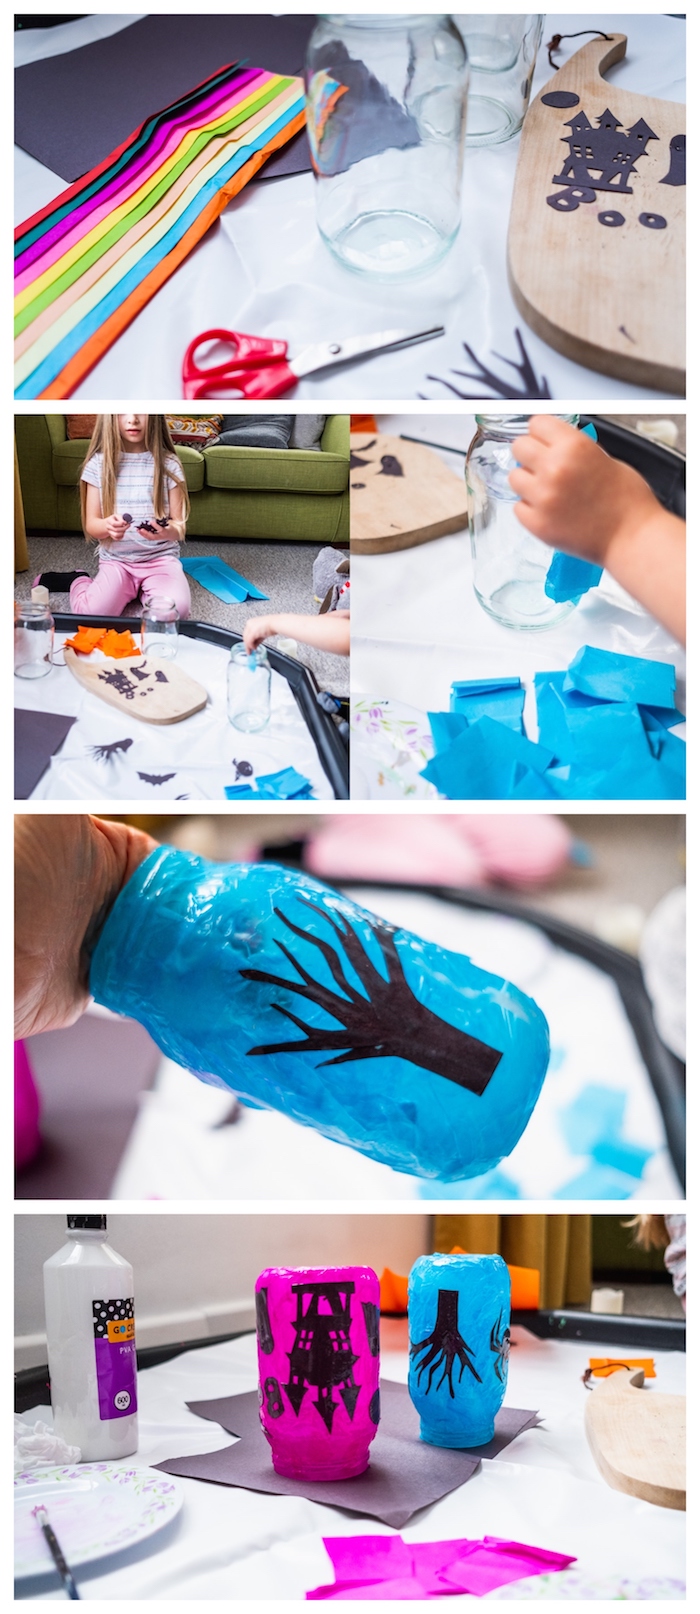 fabrication de photo phore diy dans pot en verre recyclé décoré de papier de soie et de silhouettes noires de papier activité manuelle maternelle